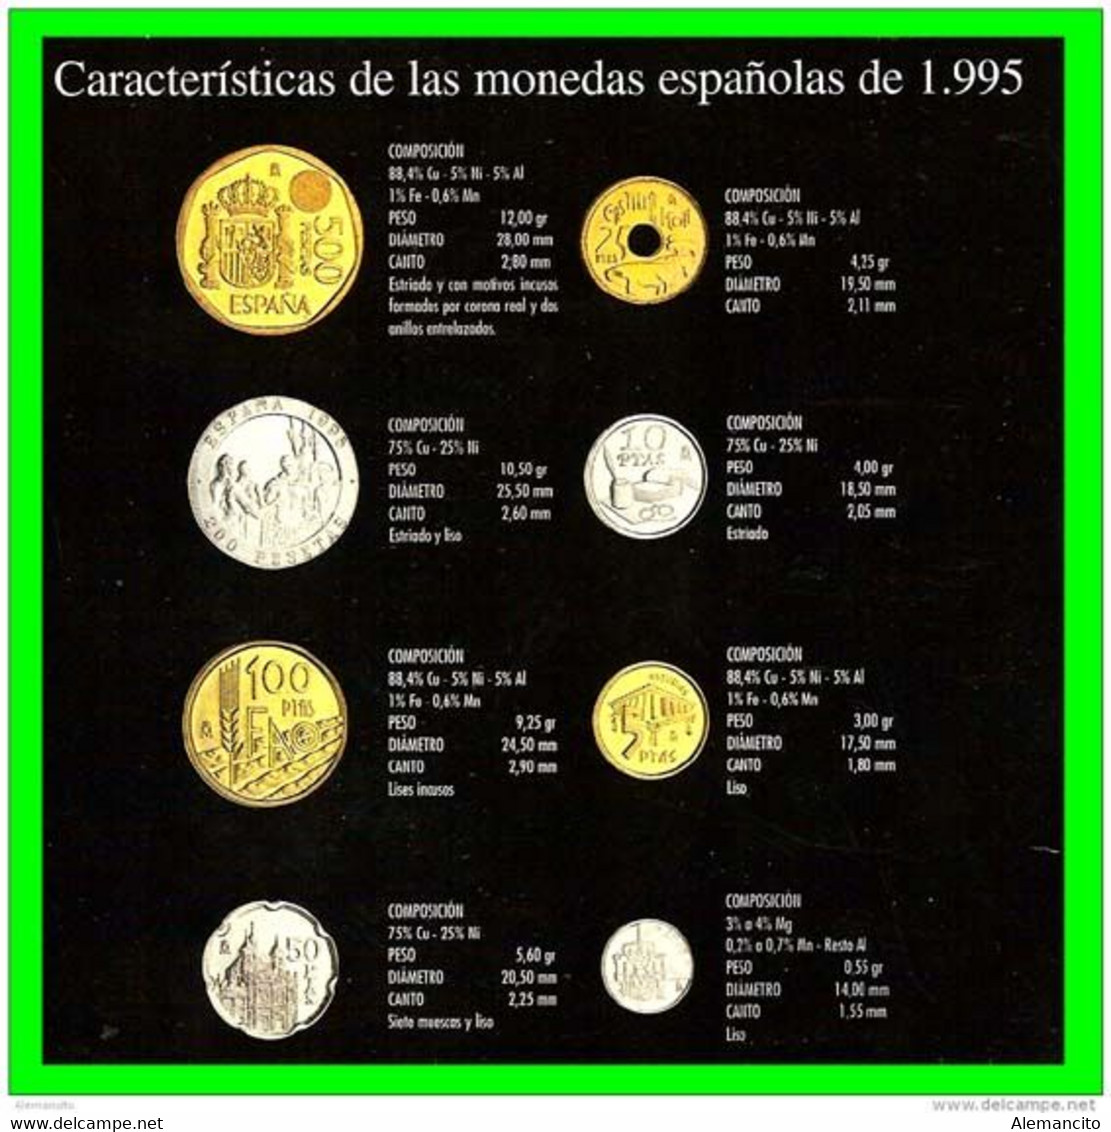 ESPAÑA CARACTERÍSTICAS CARTERA OFICIAL DE ESPAÑA 1995 FNMT. COLECCION DE 8 MONEDAS CALIDAD PROOF DE CURSO LEGAL, - Ongebruikte Sets & Proefsets